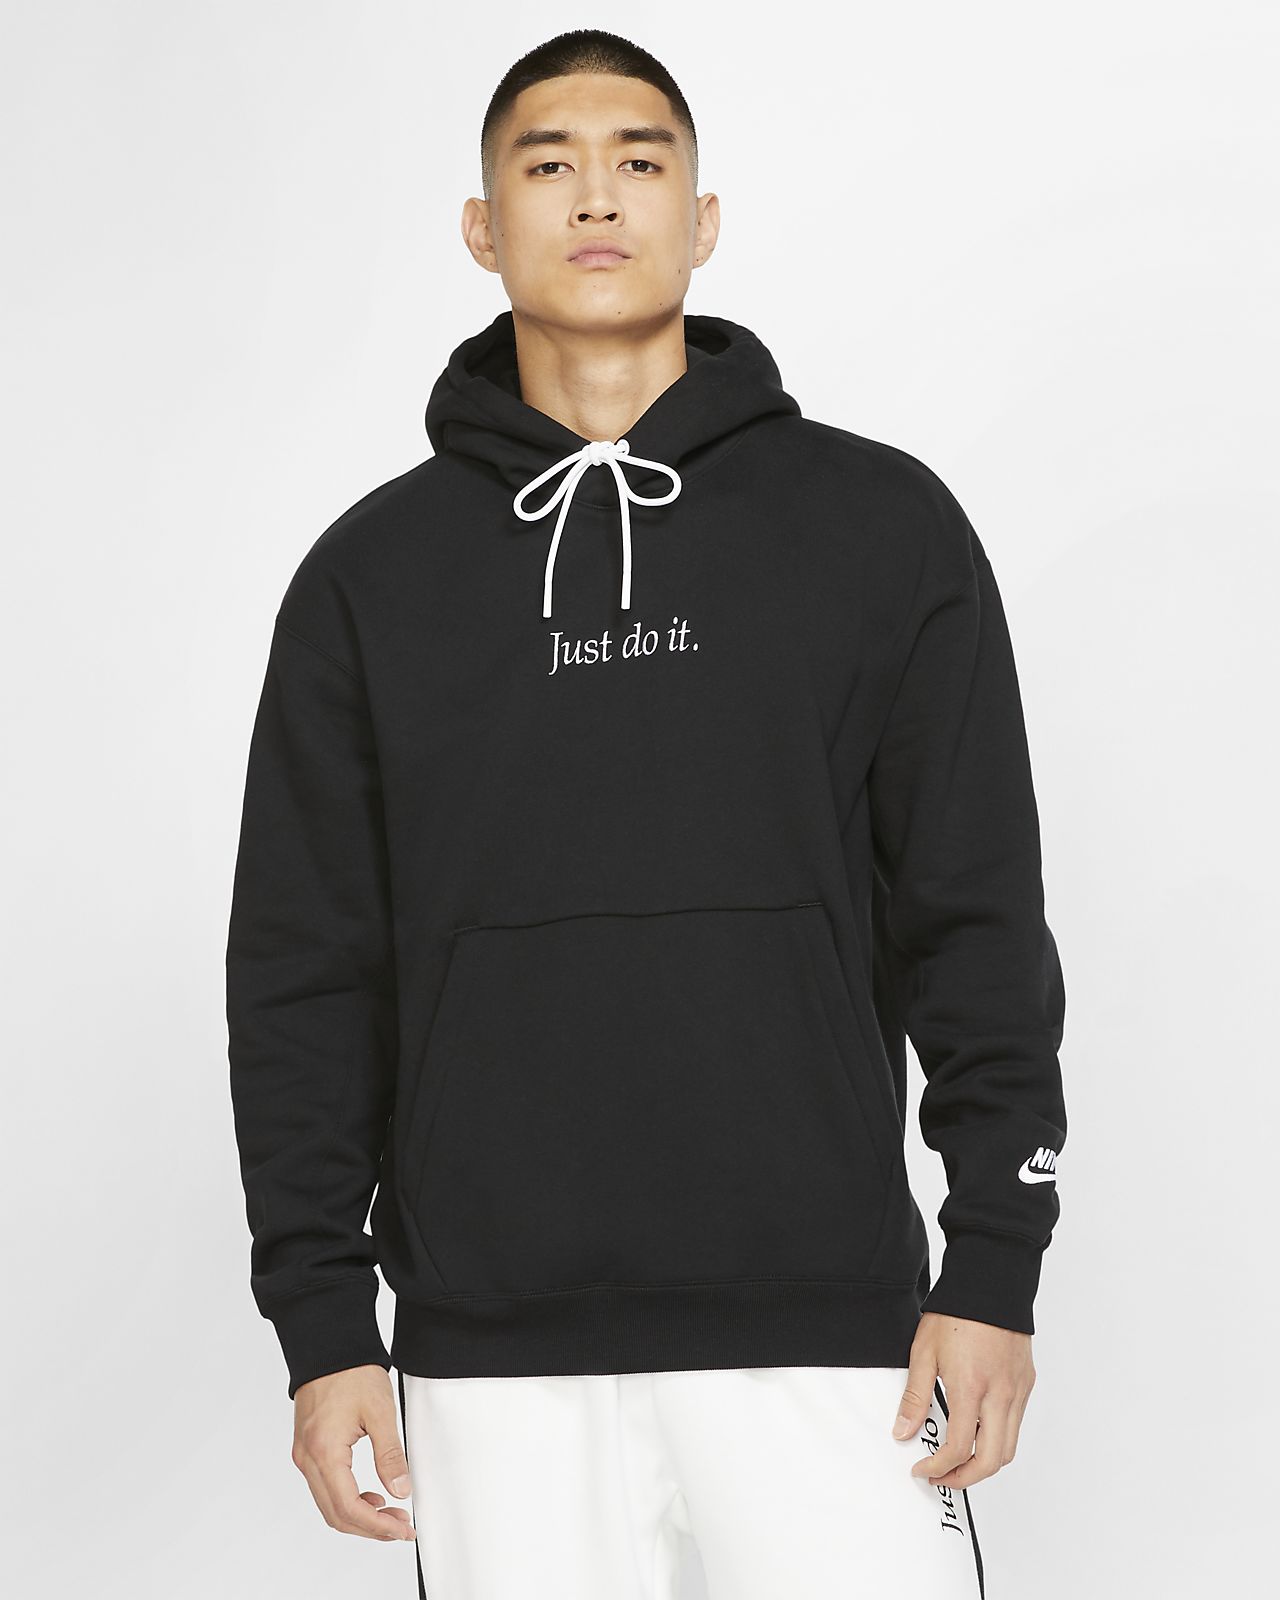 nfl hoodies on sale